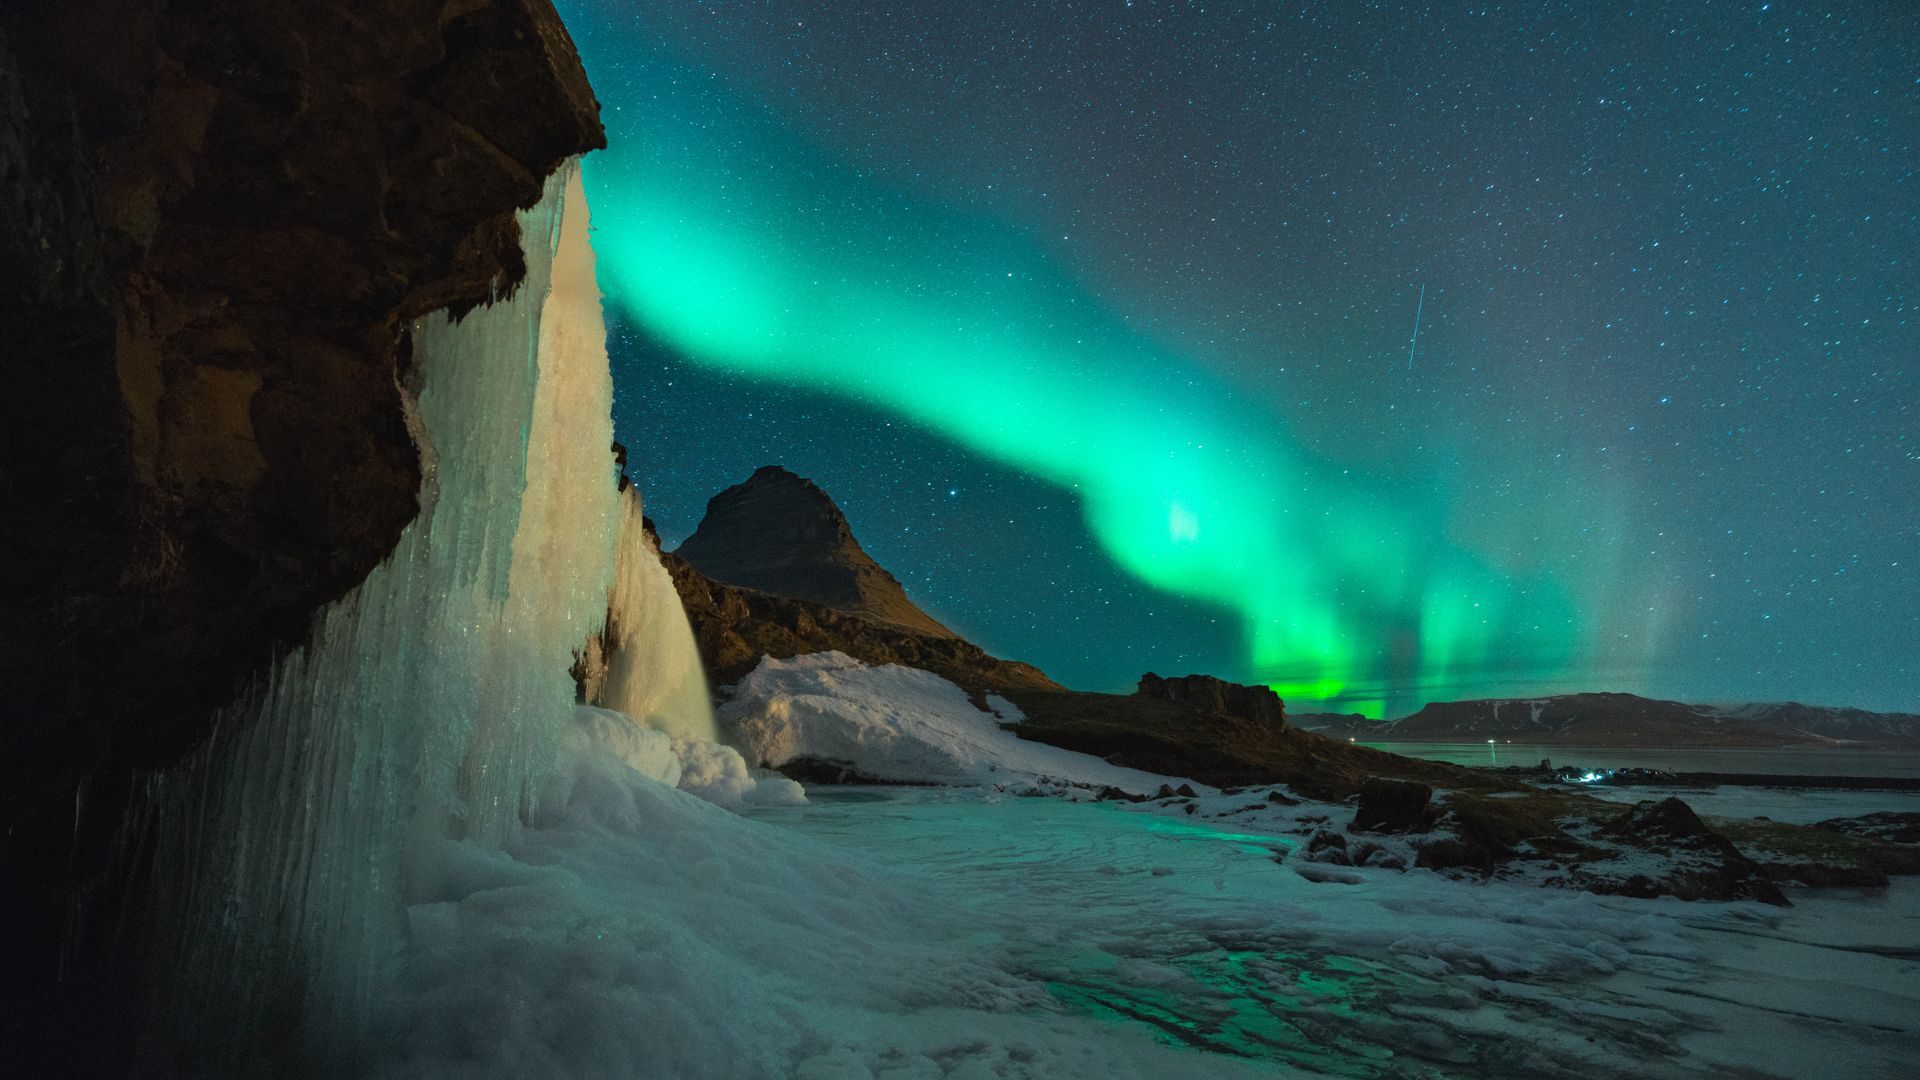 Islandia - lodowce, wulkany i zorza polarna - Wyjazdy grupowe z Matimpex Travel